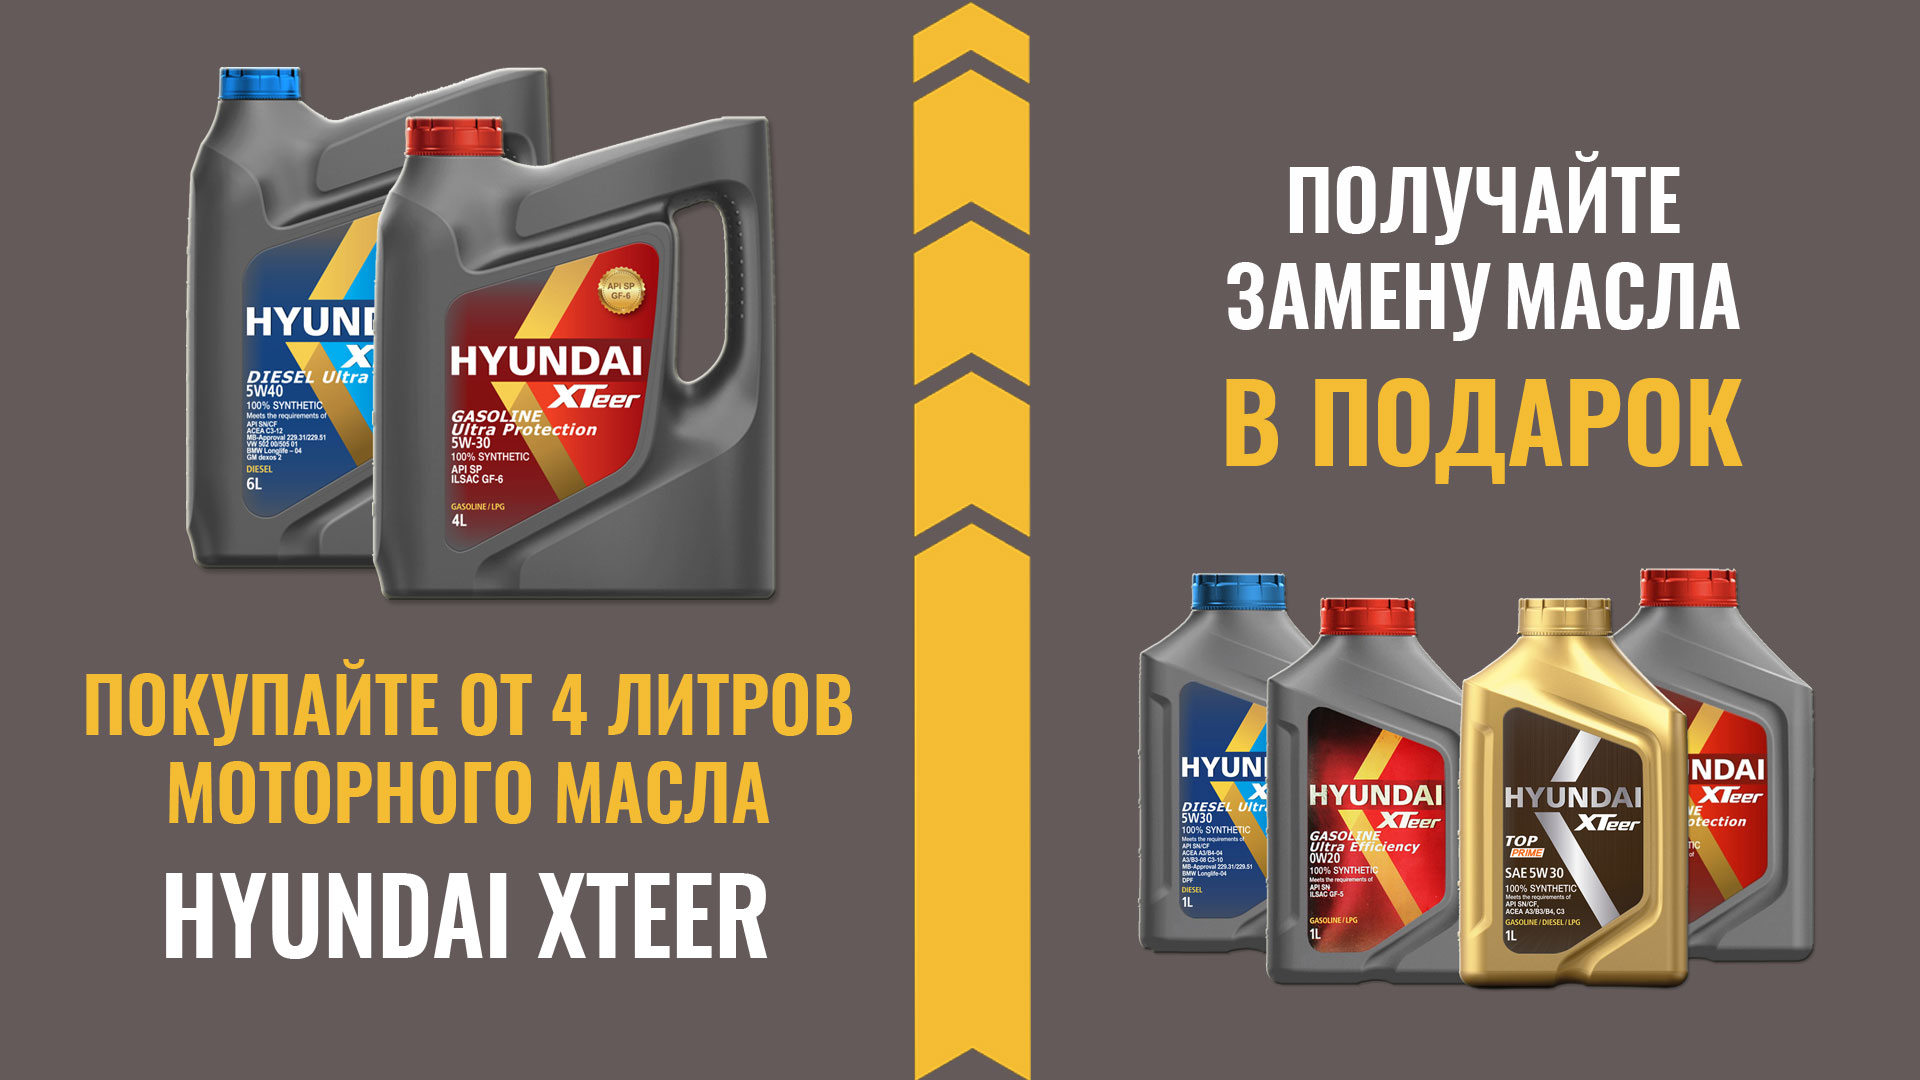 Акция с участием бренда HYUNDAI XTeer в сети магазинов АВТОРУСЬ